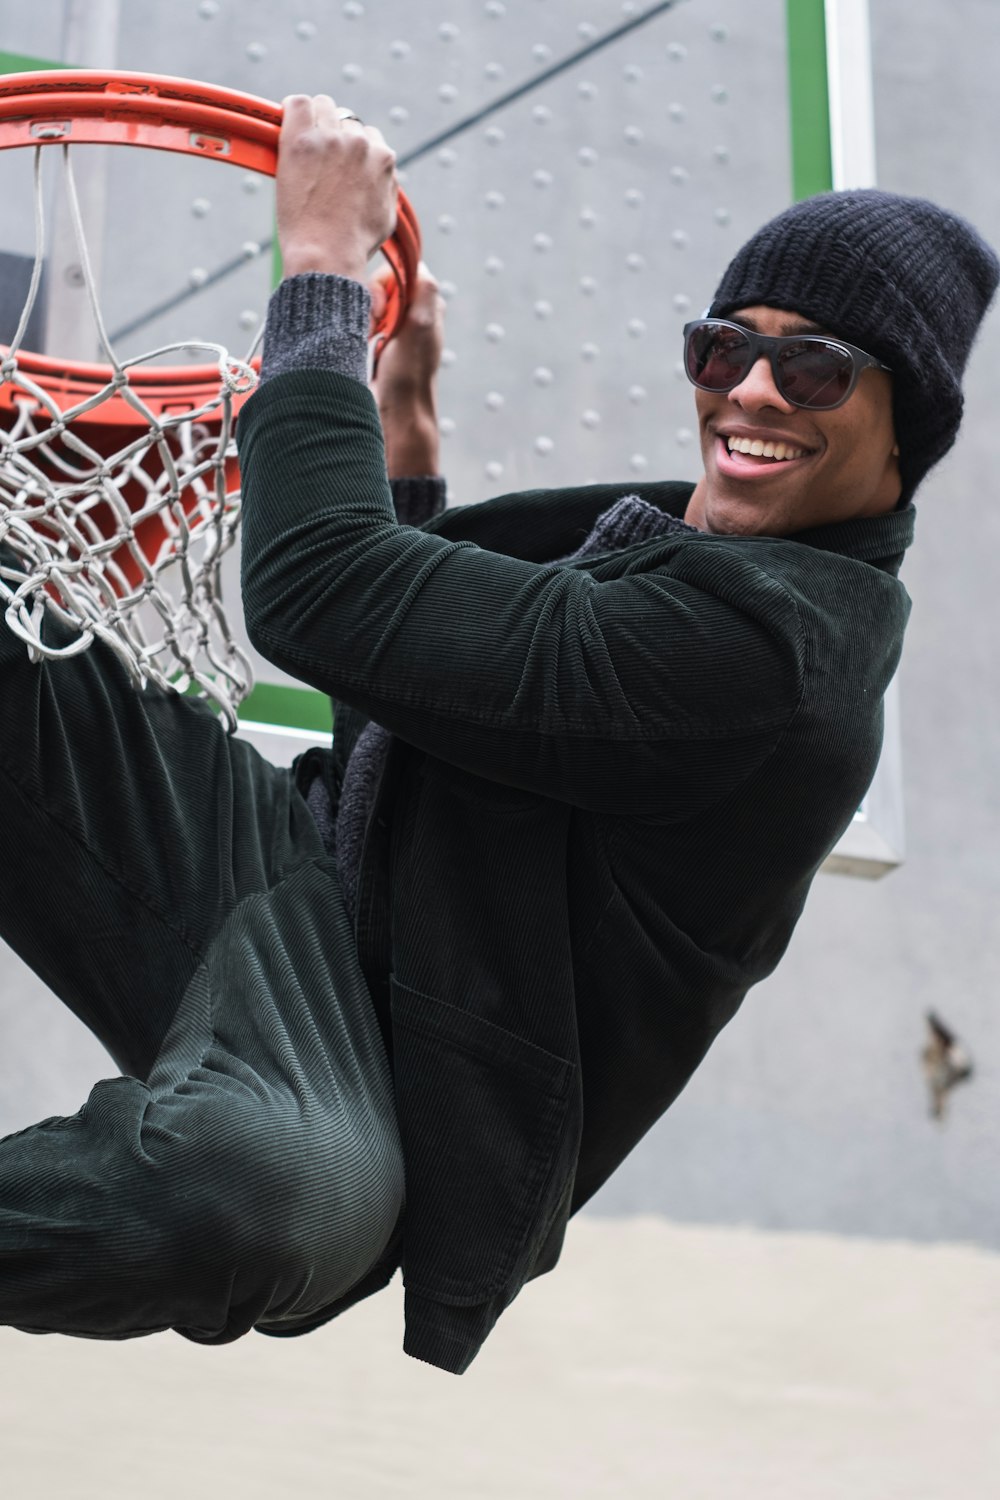 Un uomo con un cappello e occhiali da sole sta giocando a basket foto –  Cappello a cuffia Immagine gratuita su Unsplash